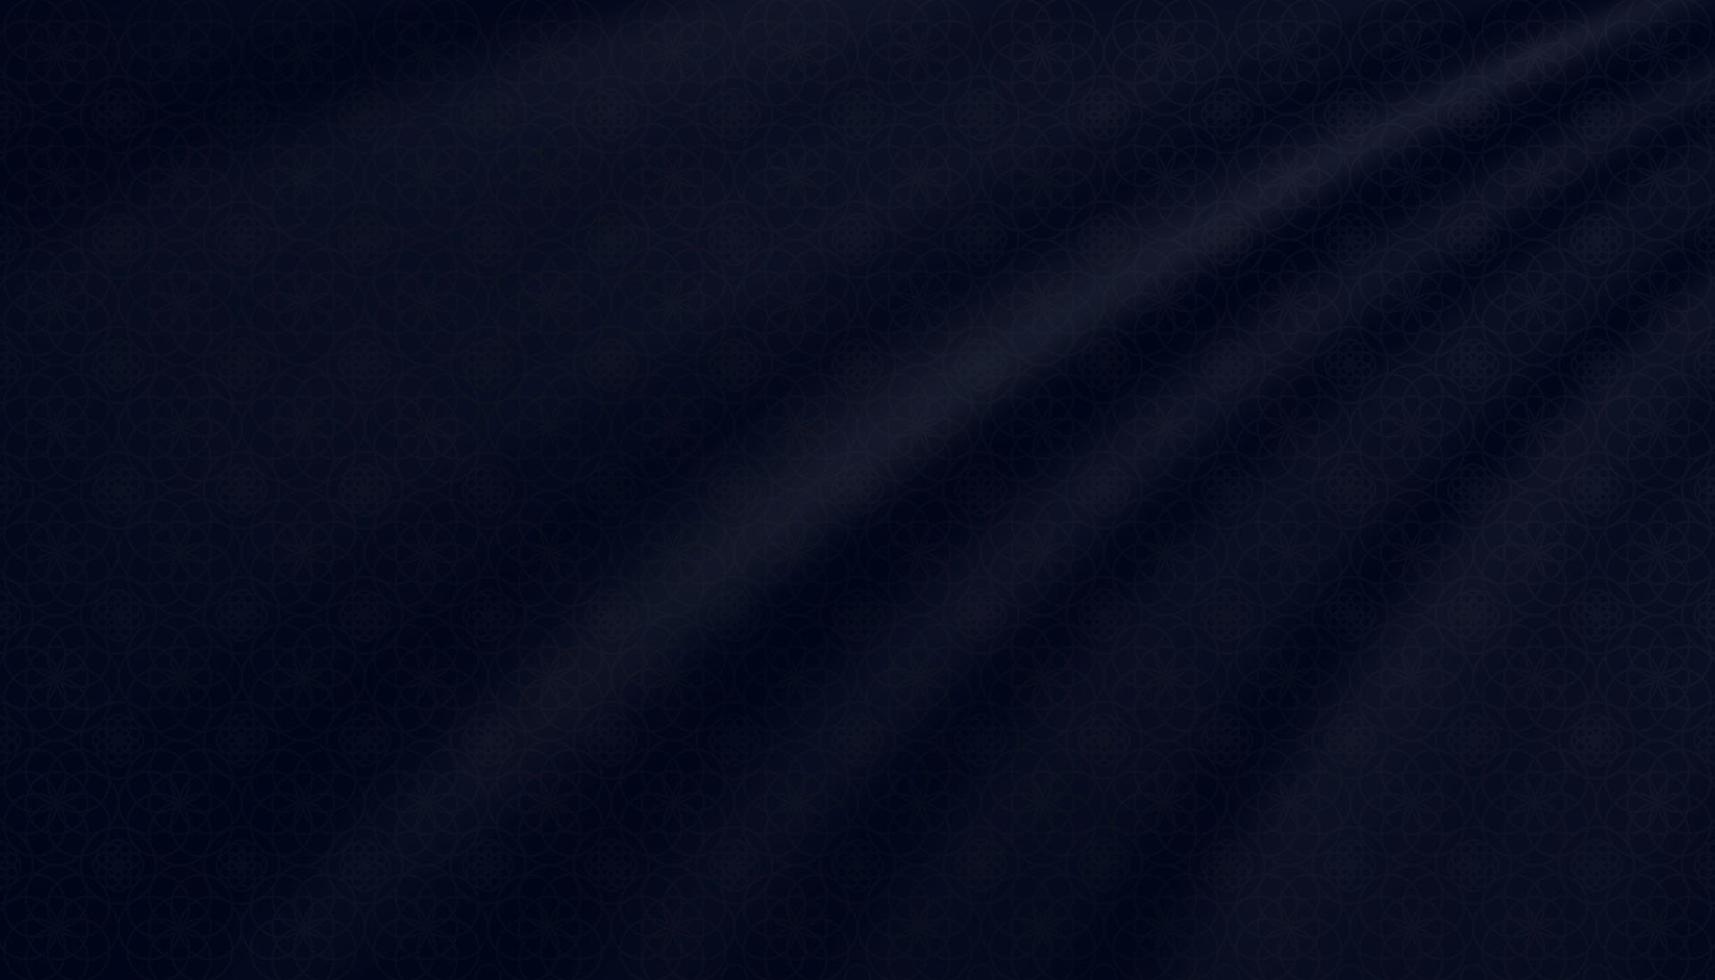 islamitische achtergrond oosters patroon op donkerblauwe golvende zijde stof. vector illustratie achtergrond banner voor religie van moslim symbolisch, eid ul fitr, ramadan kareem, eid al adha, eid mubarak vakantie